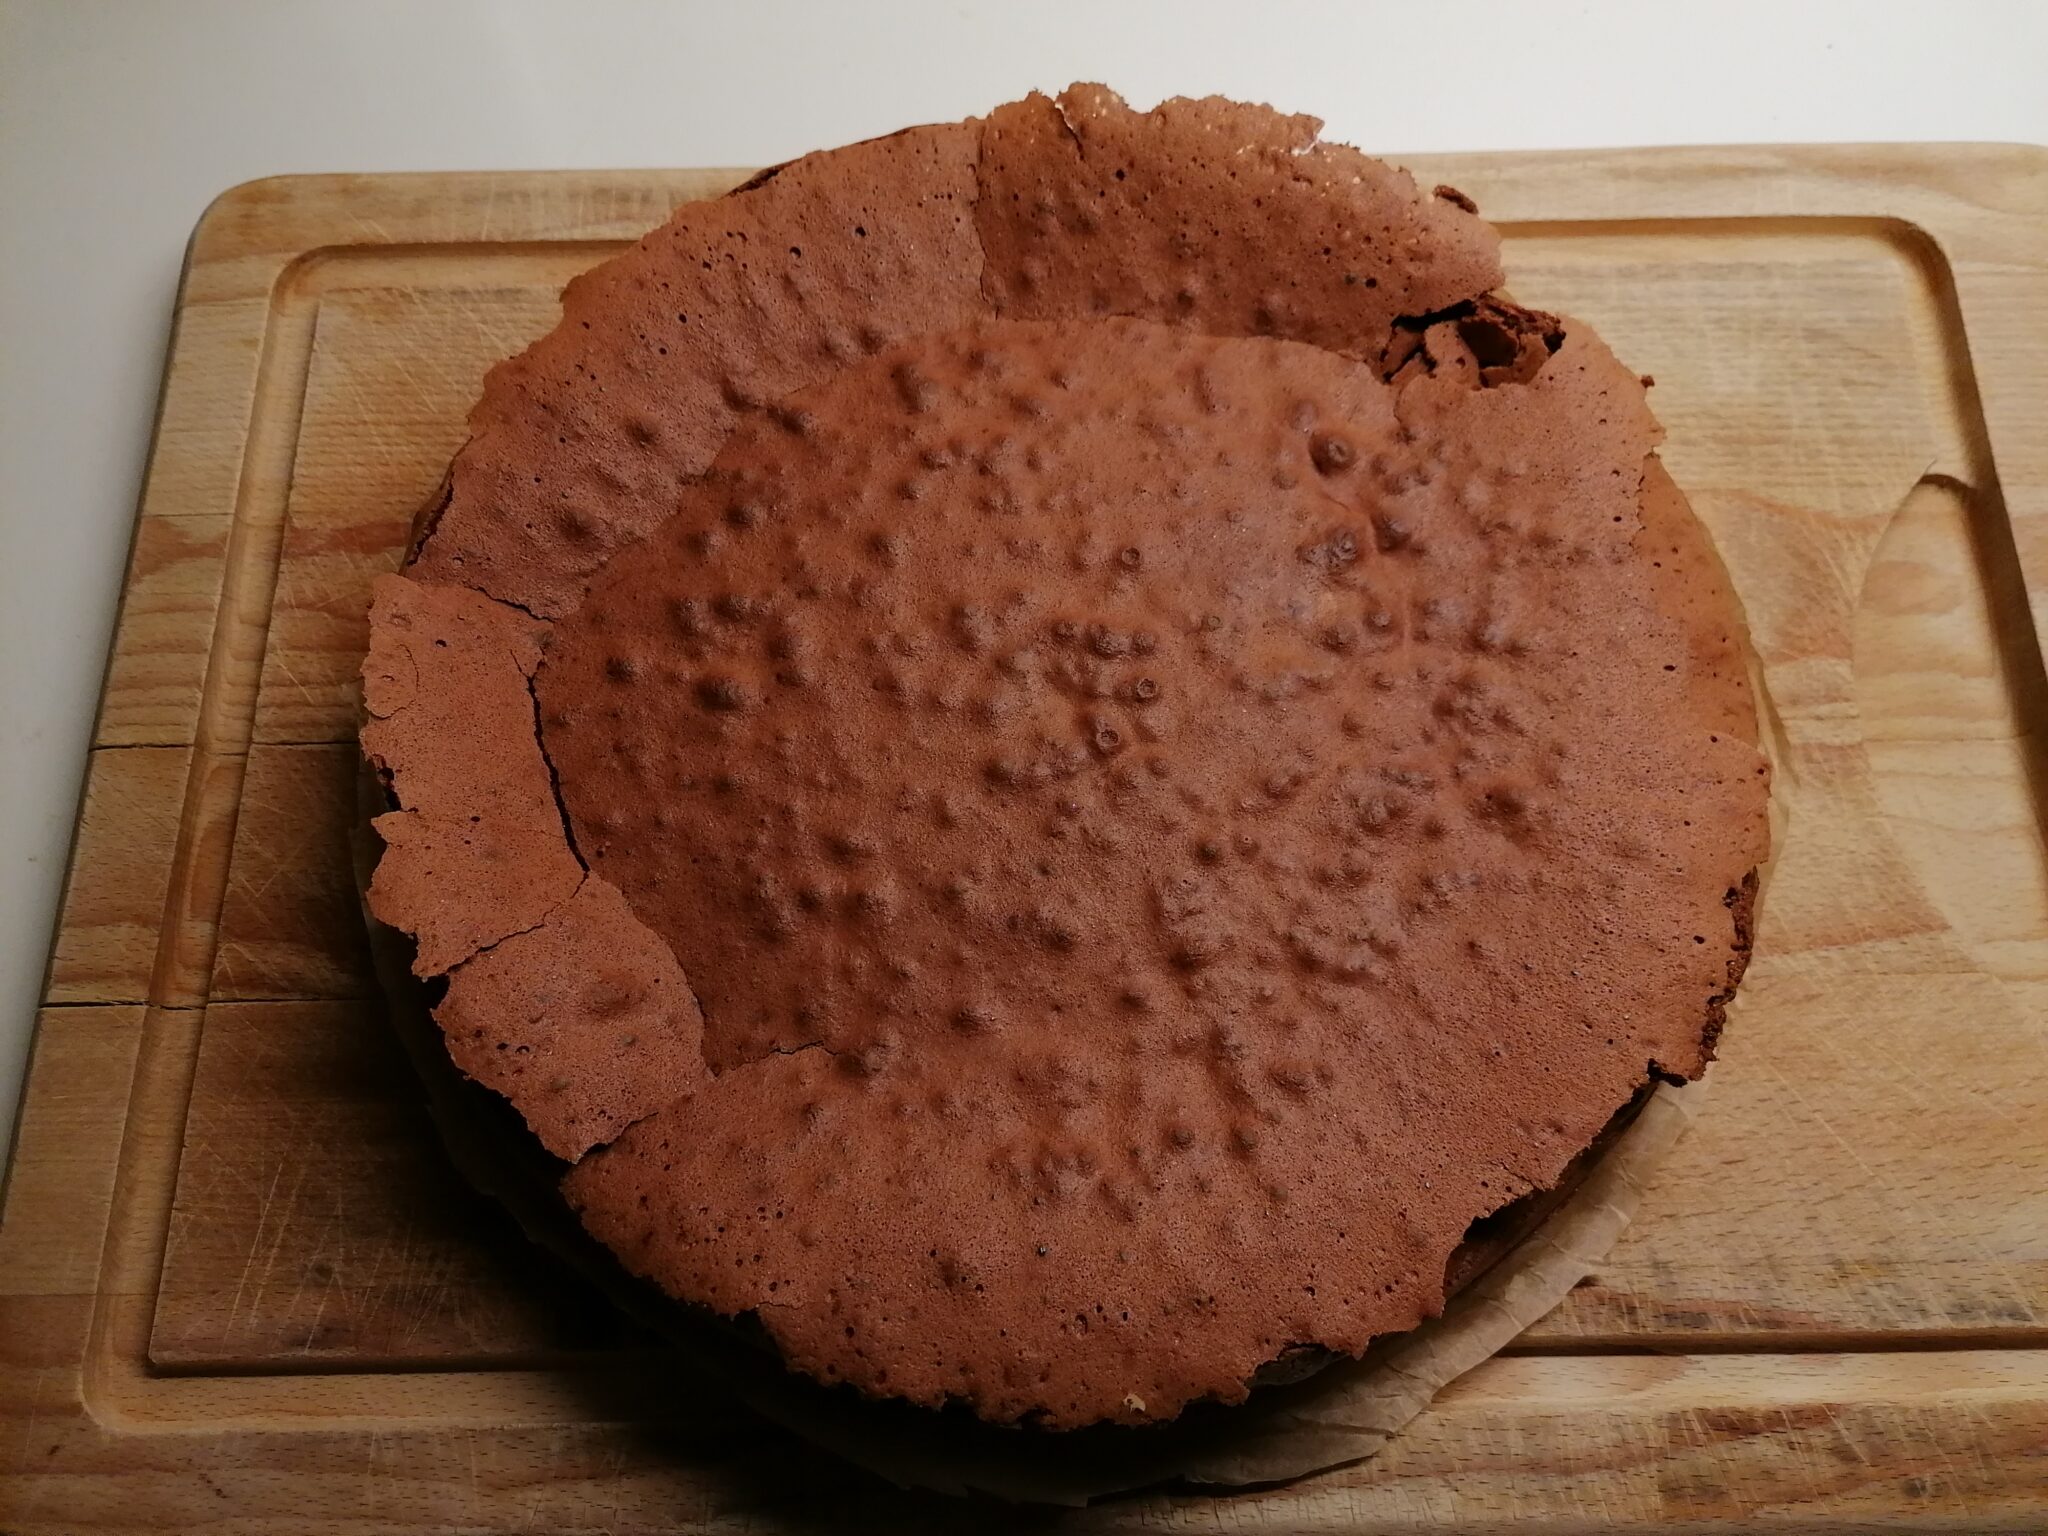 Chocolate cake ala Svend.